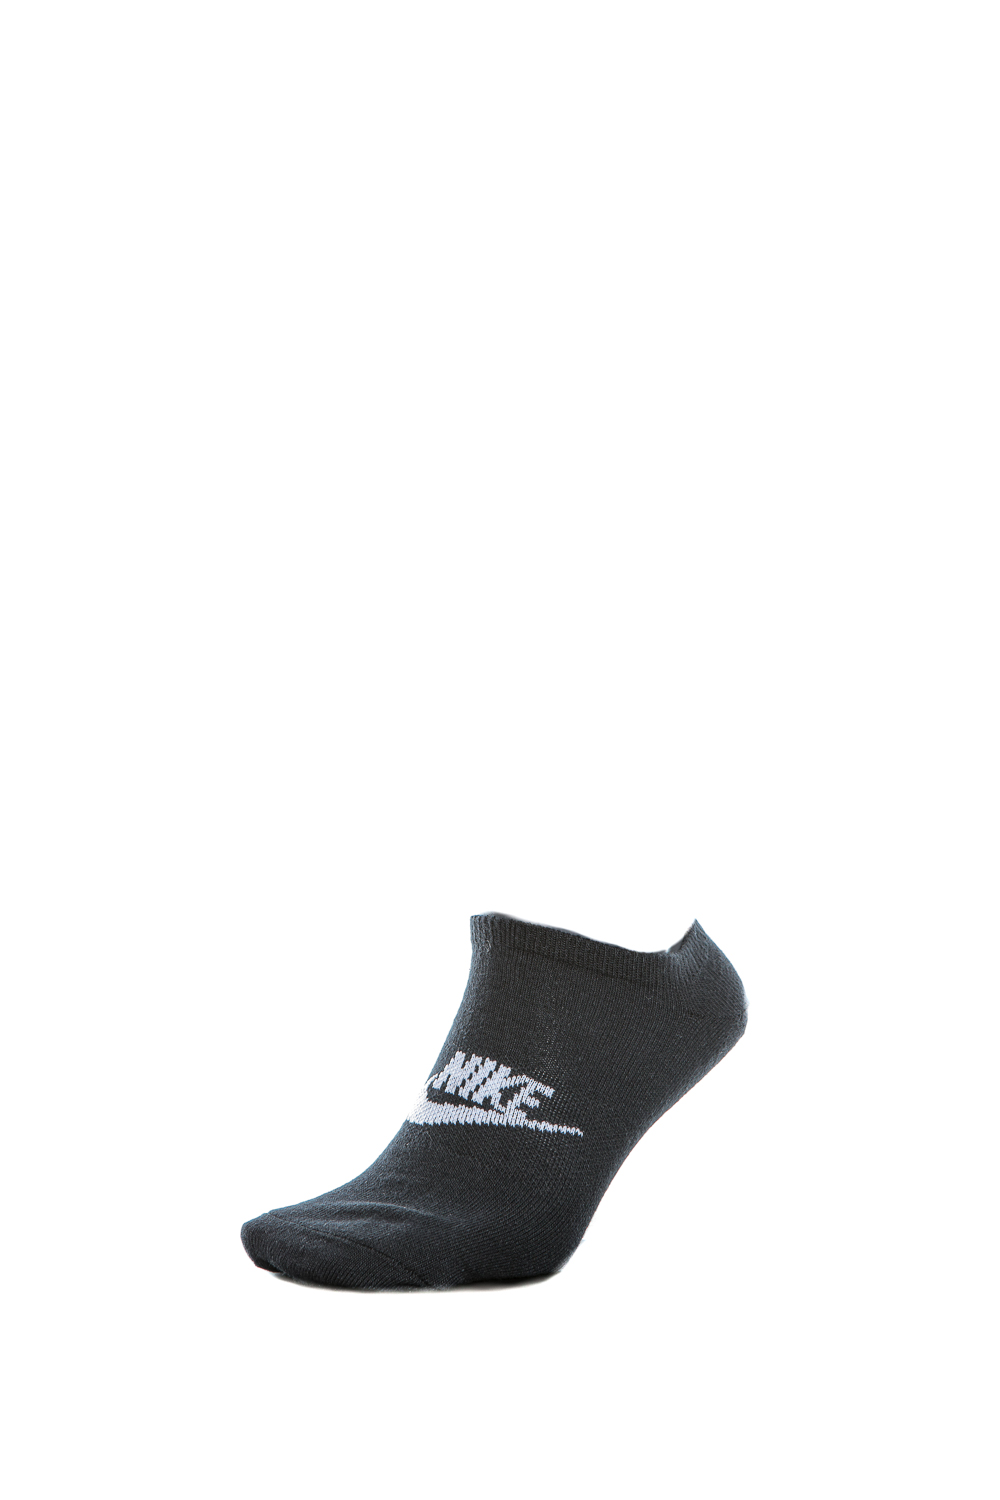 Γυναικεία/Αξεσουάρ/Κάλτσες NIKE - Unisex κάλτσες NIKE EVERYDAY ESSENTIAL NS μαύρες